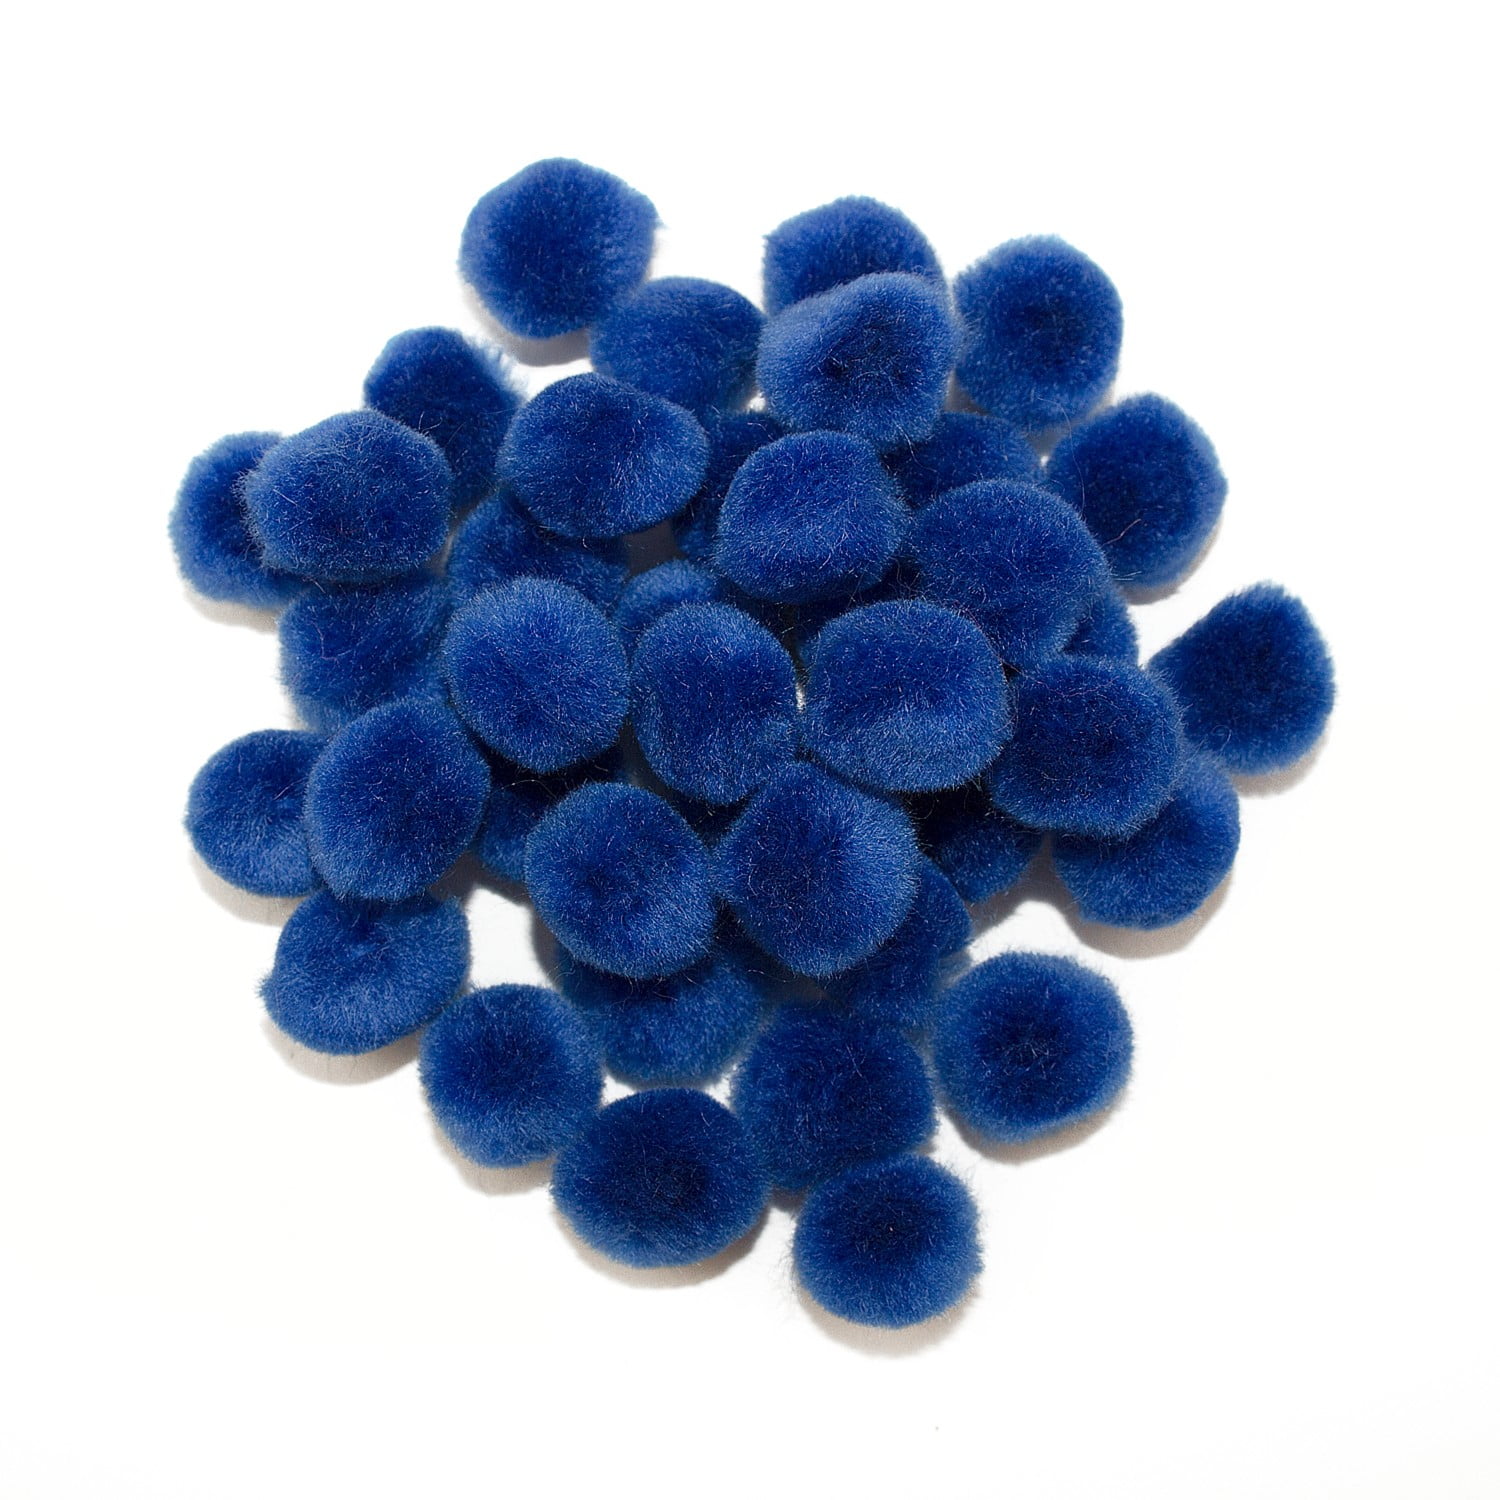  Sapphire Blue Craft Pom Poms, 250 Pieces Pom Poms Set